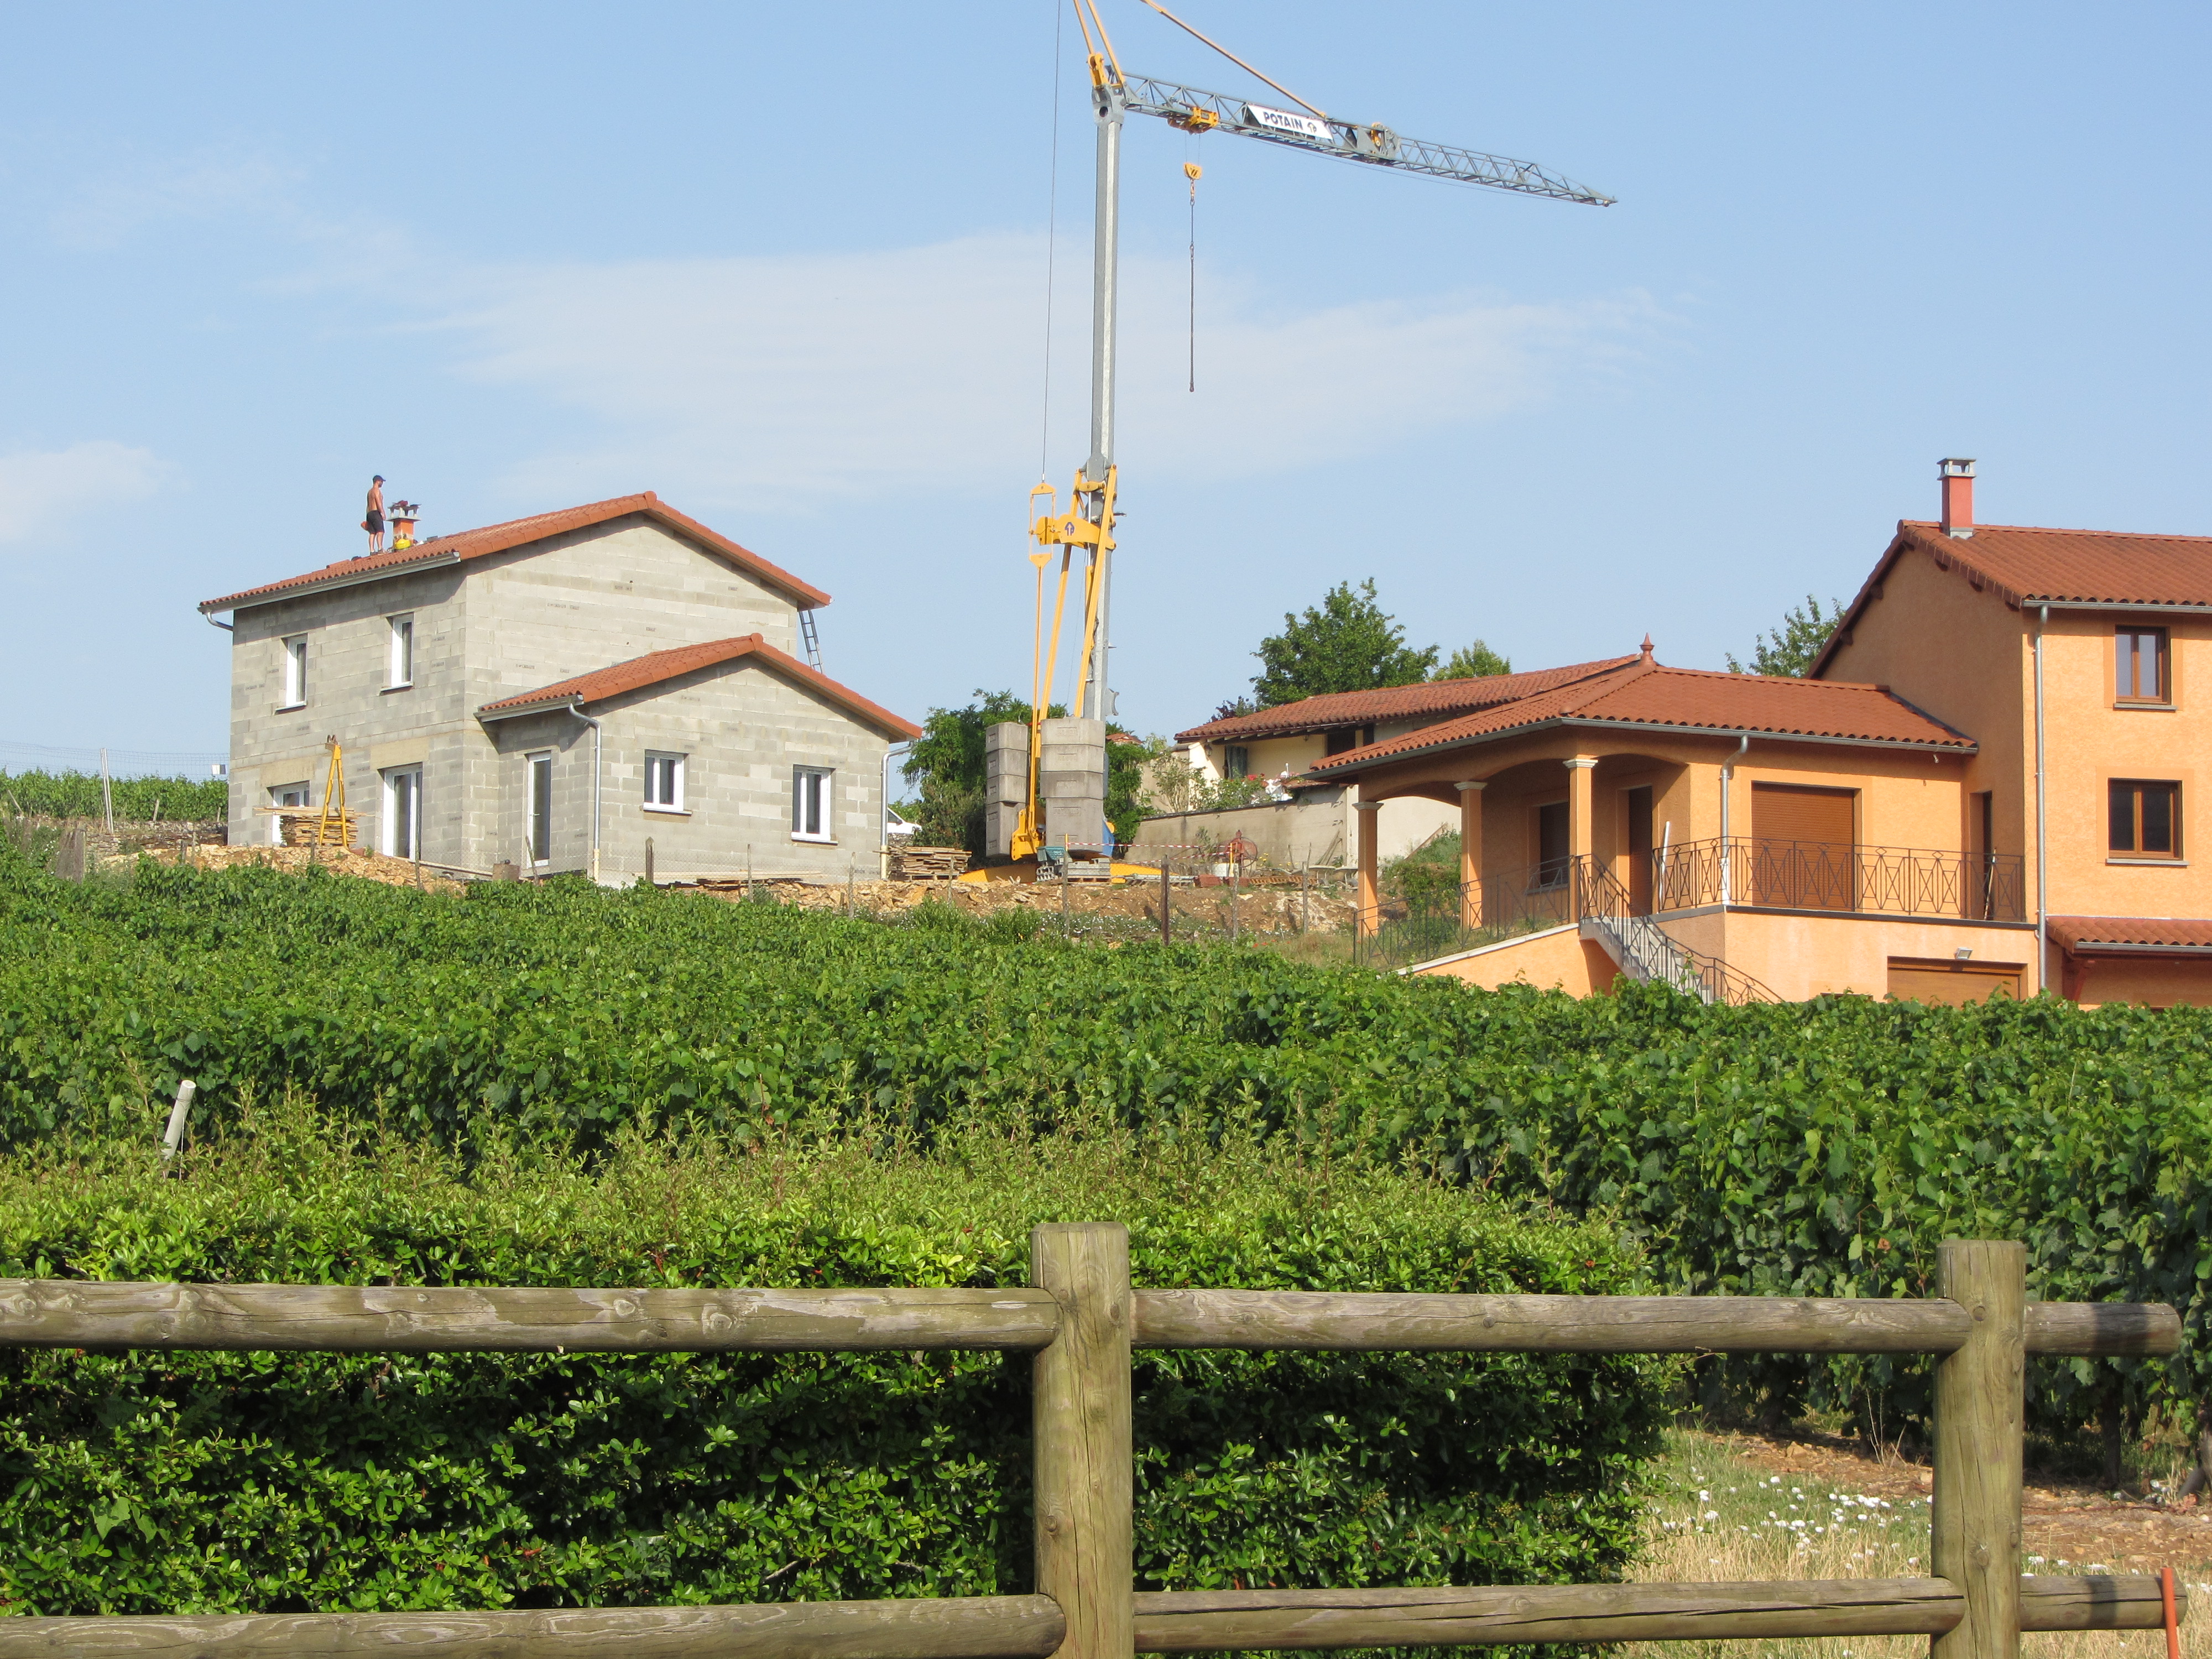 Nouvelle maison en construction, juillet 2015 